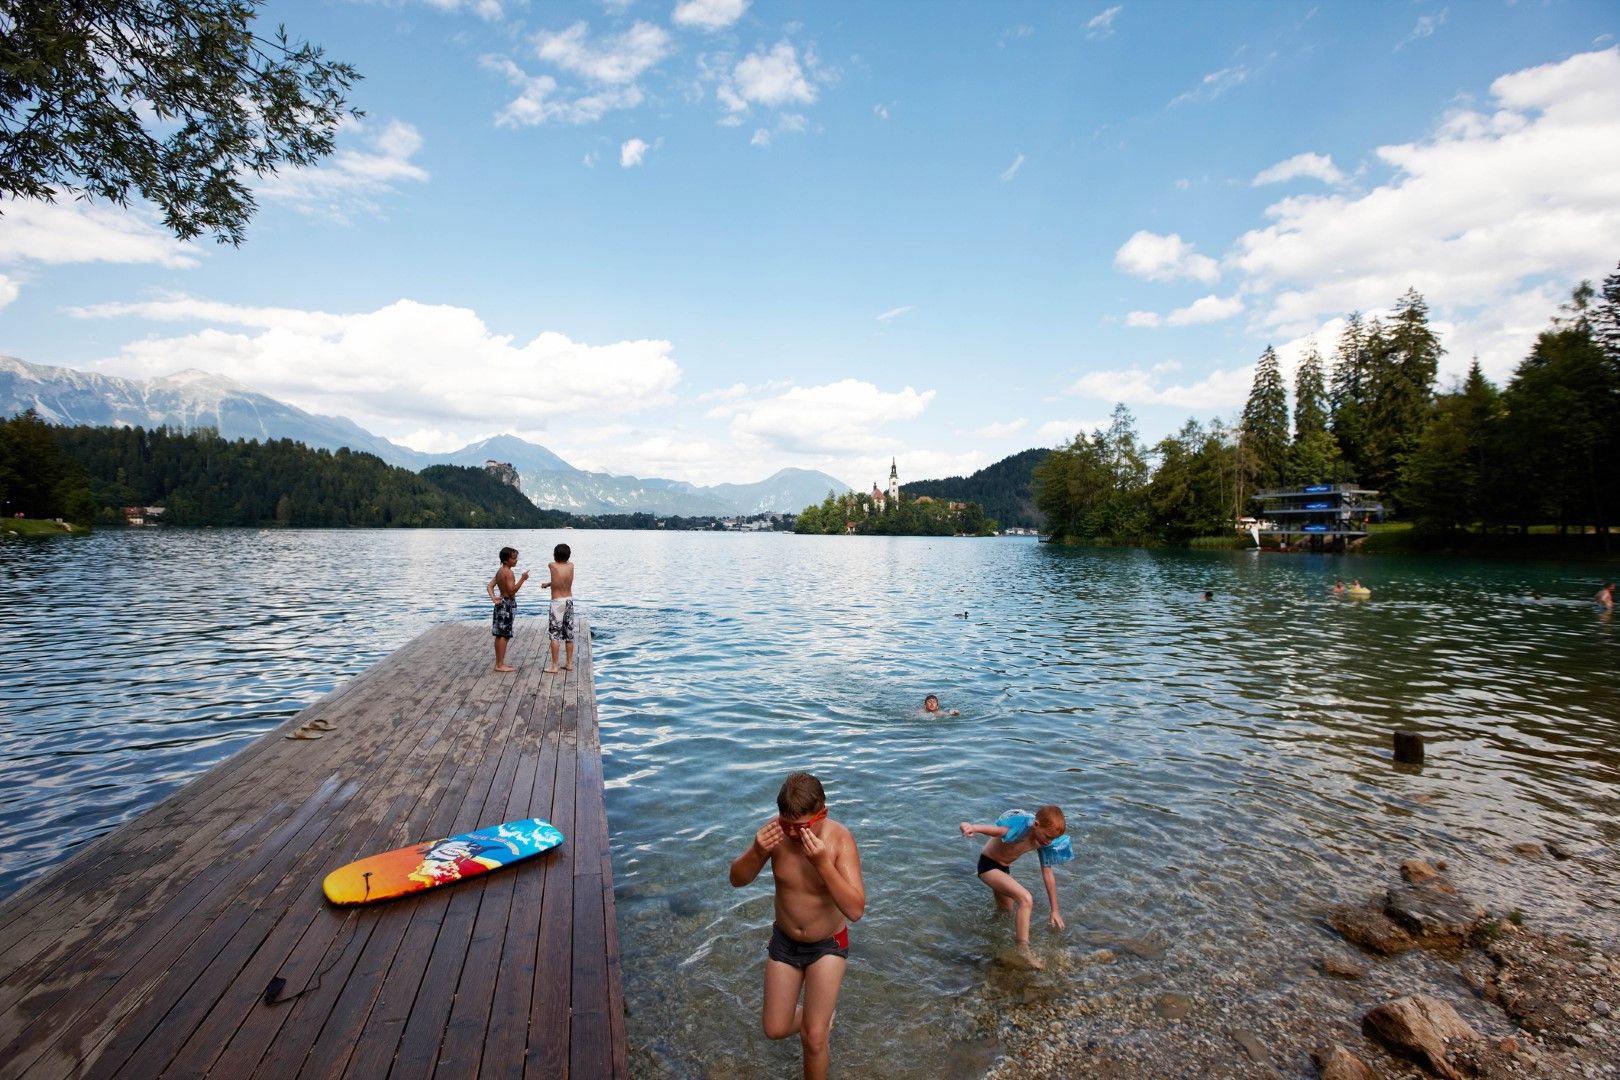 Къпането в езерото е разрешено и мнозина се наслаждават на топлото време край бреговете му